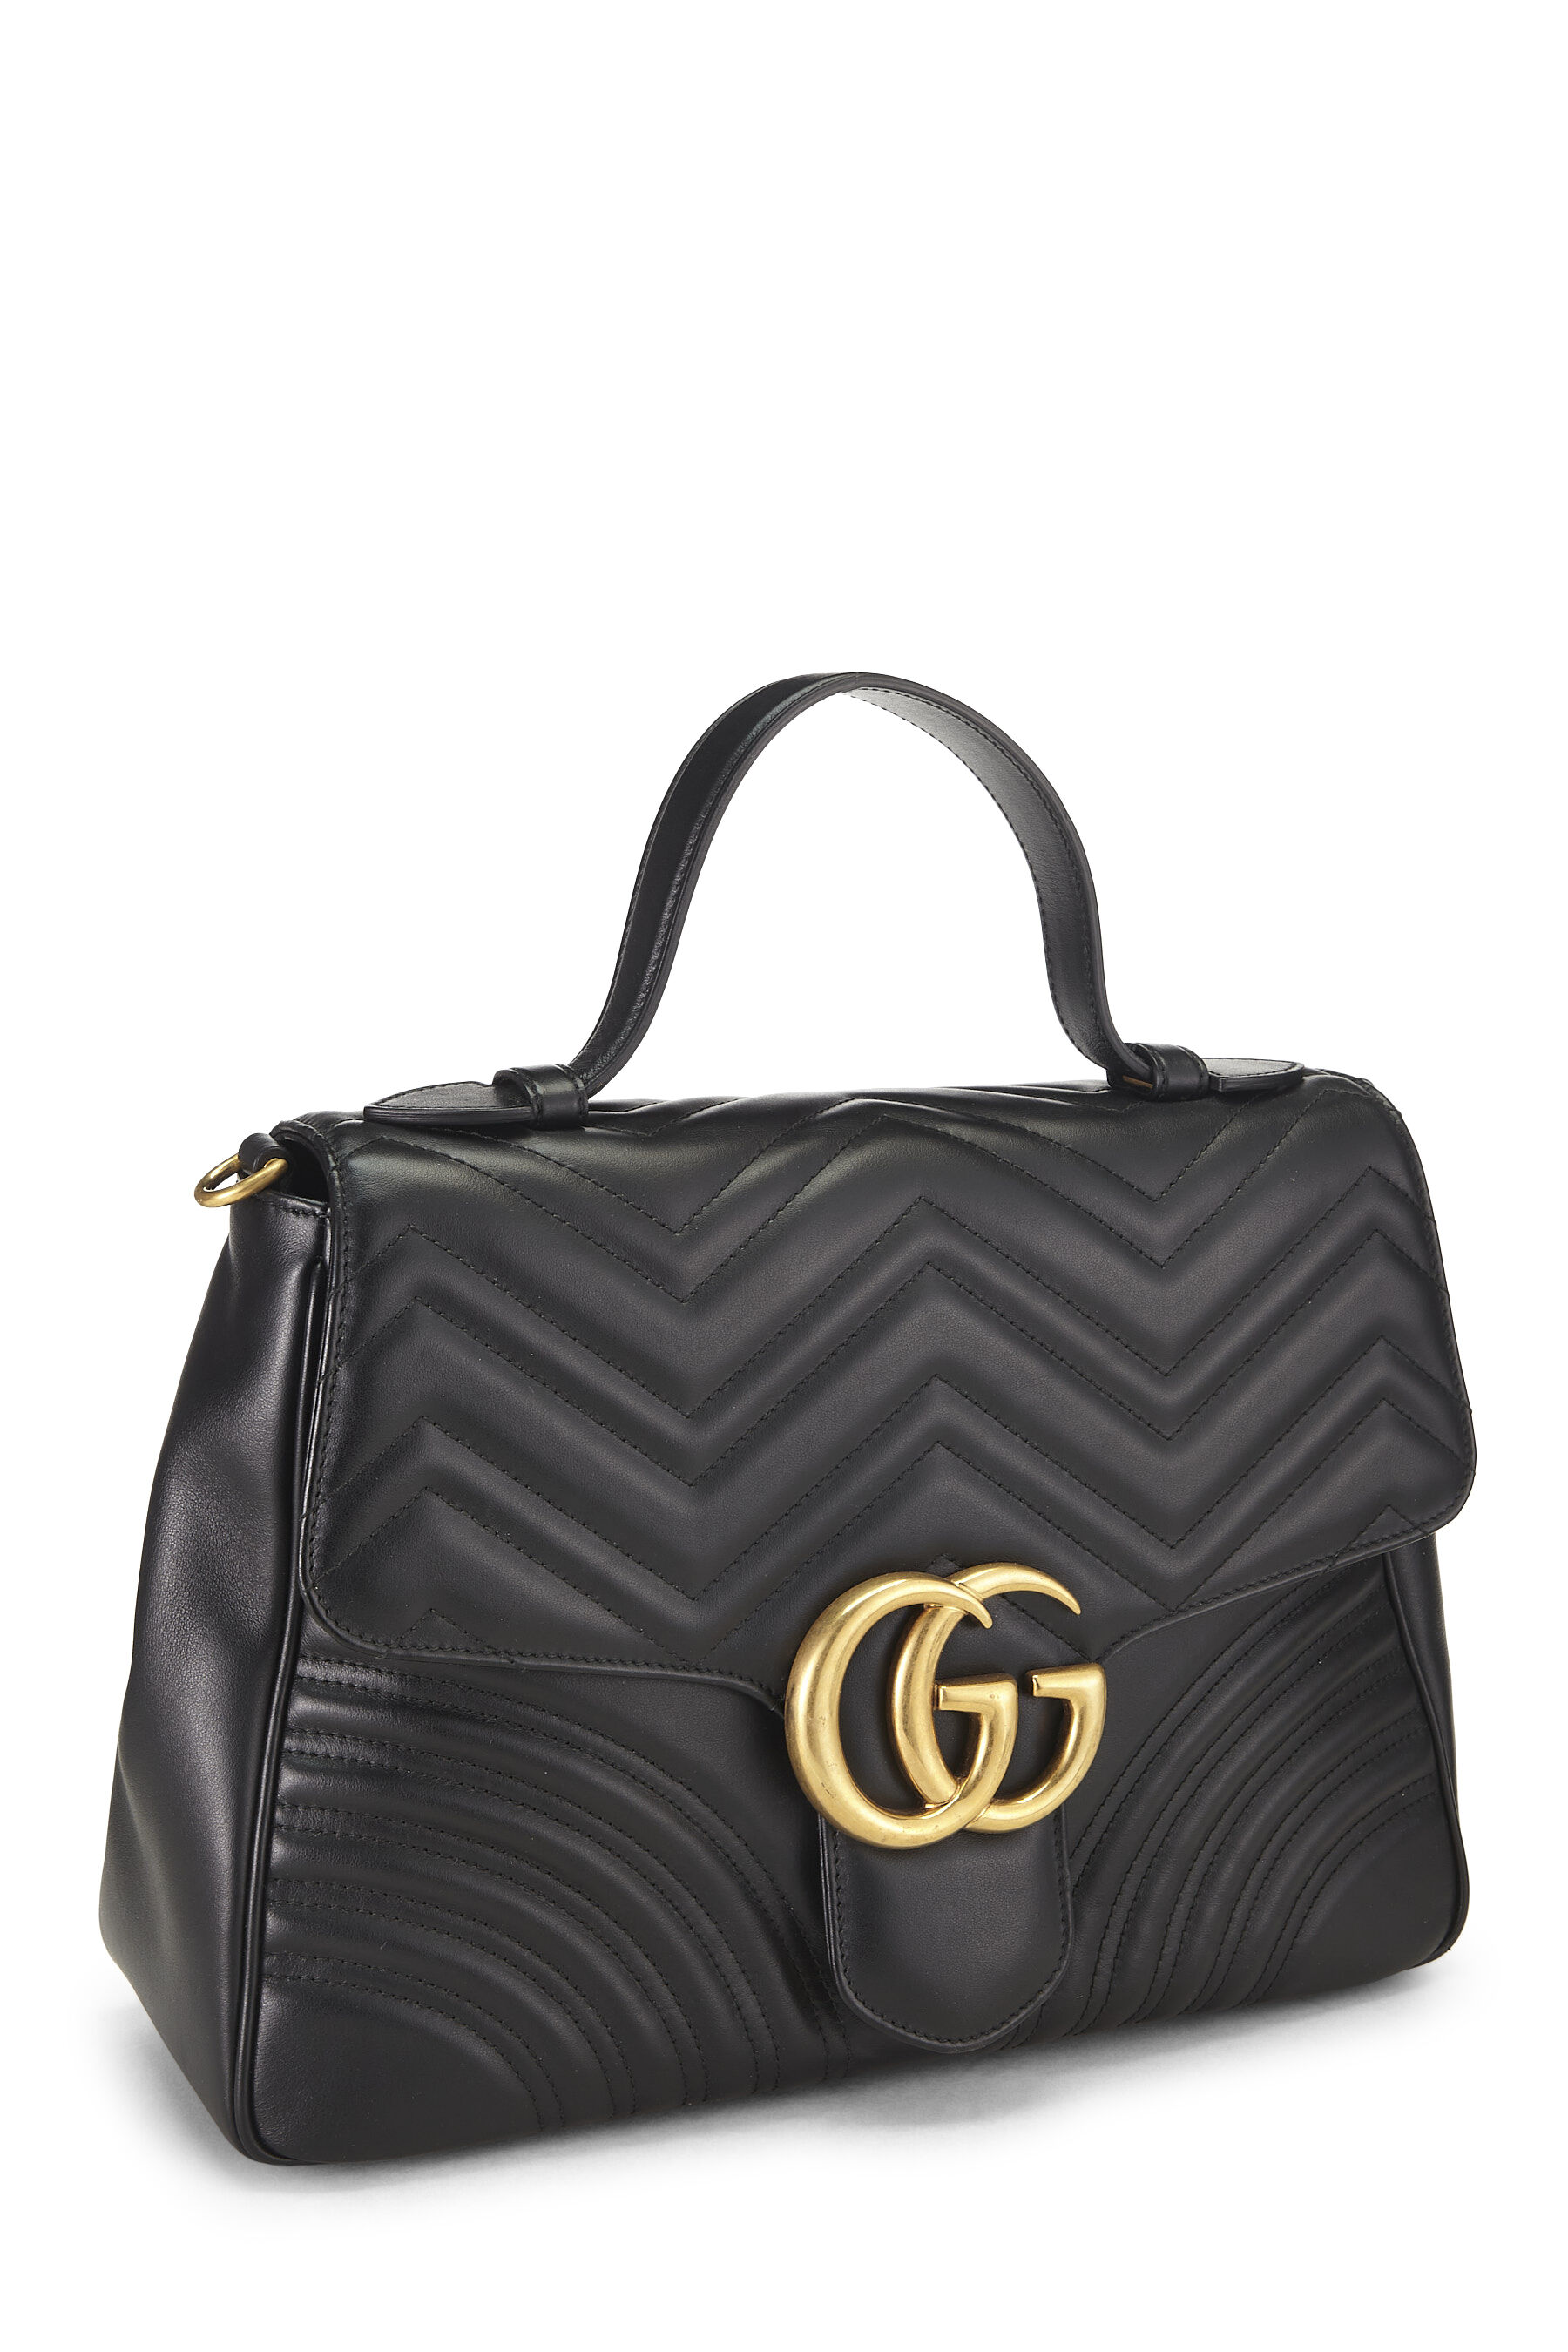 Black Leather GG Marmont Top Handle Shoulder Bag Medium